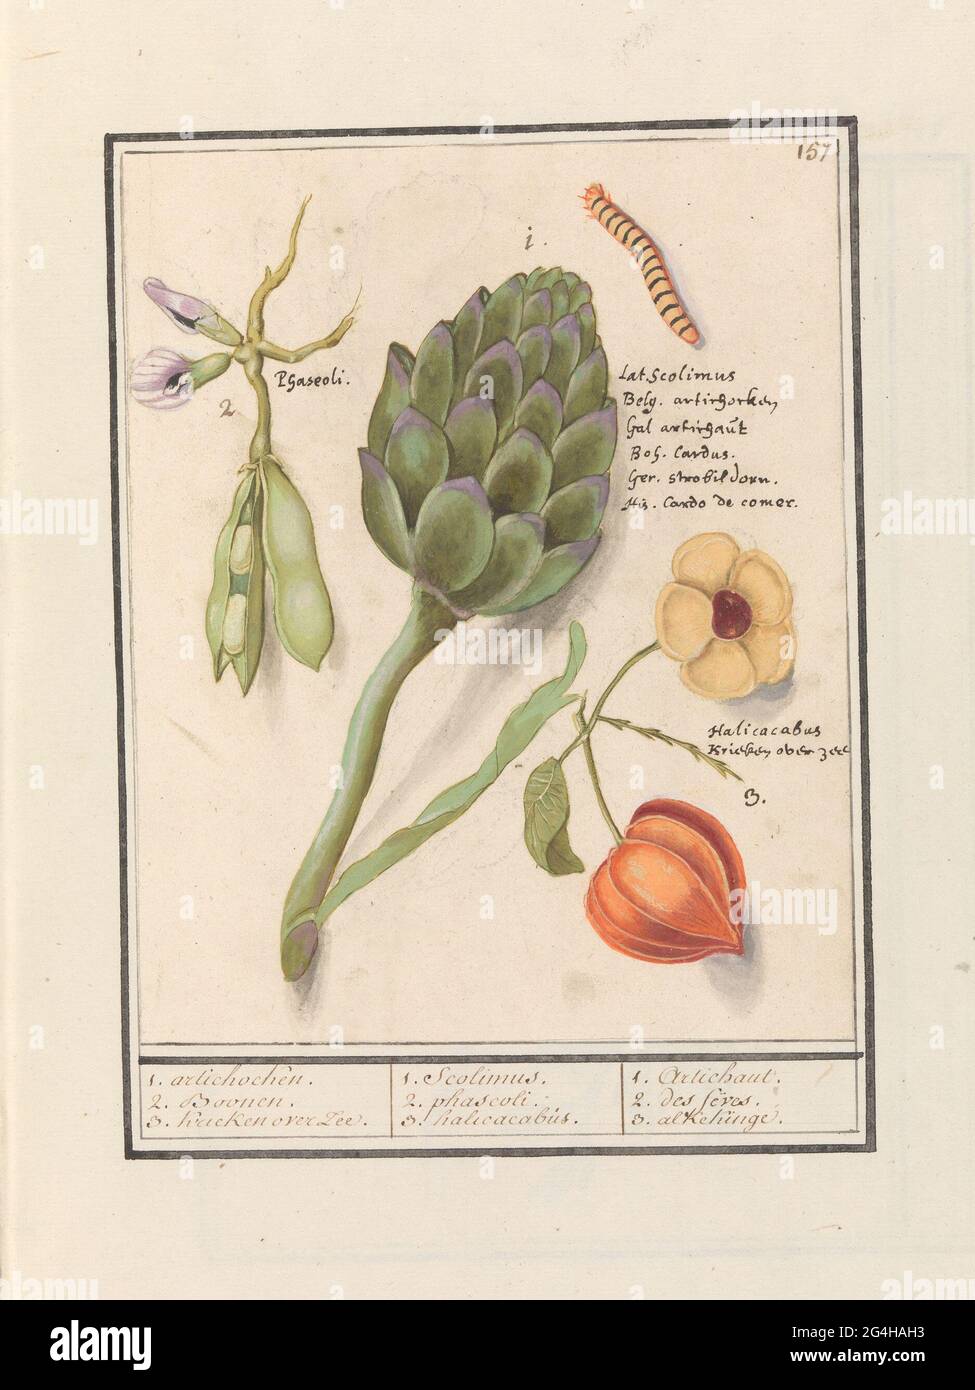 Carciofo (Cynara Scolymus), fagioli larghi (Vicia Faba) e pianta di Lampion (Physalis); 1. Archi. 2. Boonen. 3. Ciliegie di mare. / 1. scolimus. 2. Phascoli. 3. Halicacabus. / 1. Artichaut. 2. Des Feves. 3. Alkekinge. Fagioli (probabilmente fagioli), un carciofo e il fiore e il frutto della pianta della lanterna (bacca d'oro o uva spina). Anche un caterpillar. In alto a destra numerato: 157. Con i nomi in diverse lingue. Parte del secondo album con disegni di fiori e piante. Nono di dodici album con disegni di animali, uccelli e piante conosciuti intorno al 1600, realizzati dall'imperatore Rudolf II Foto Stock